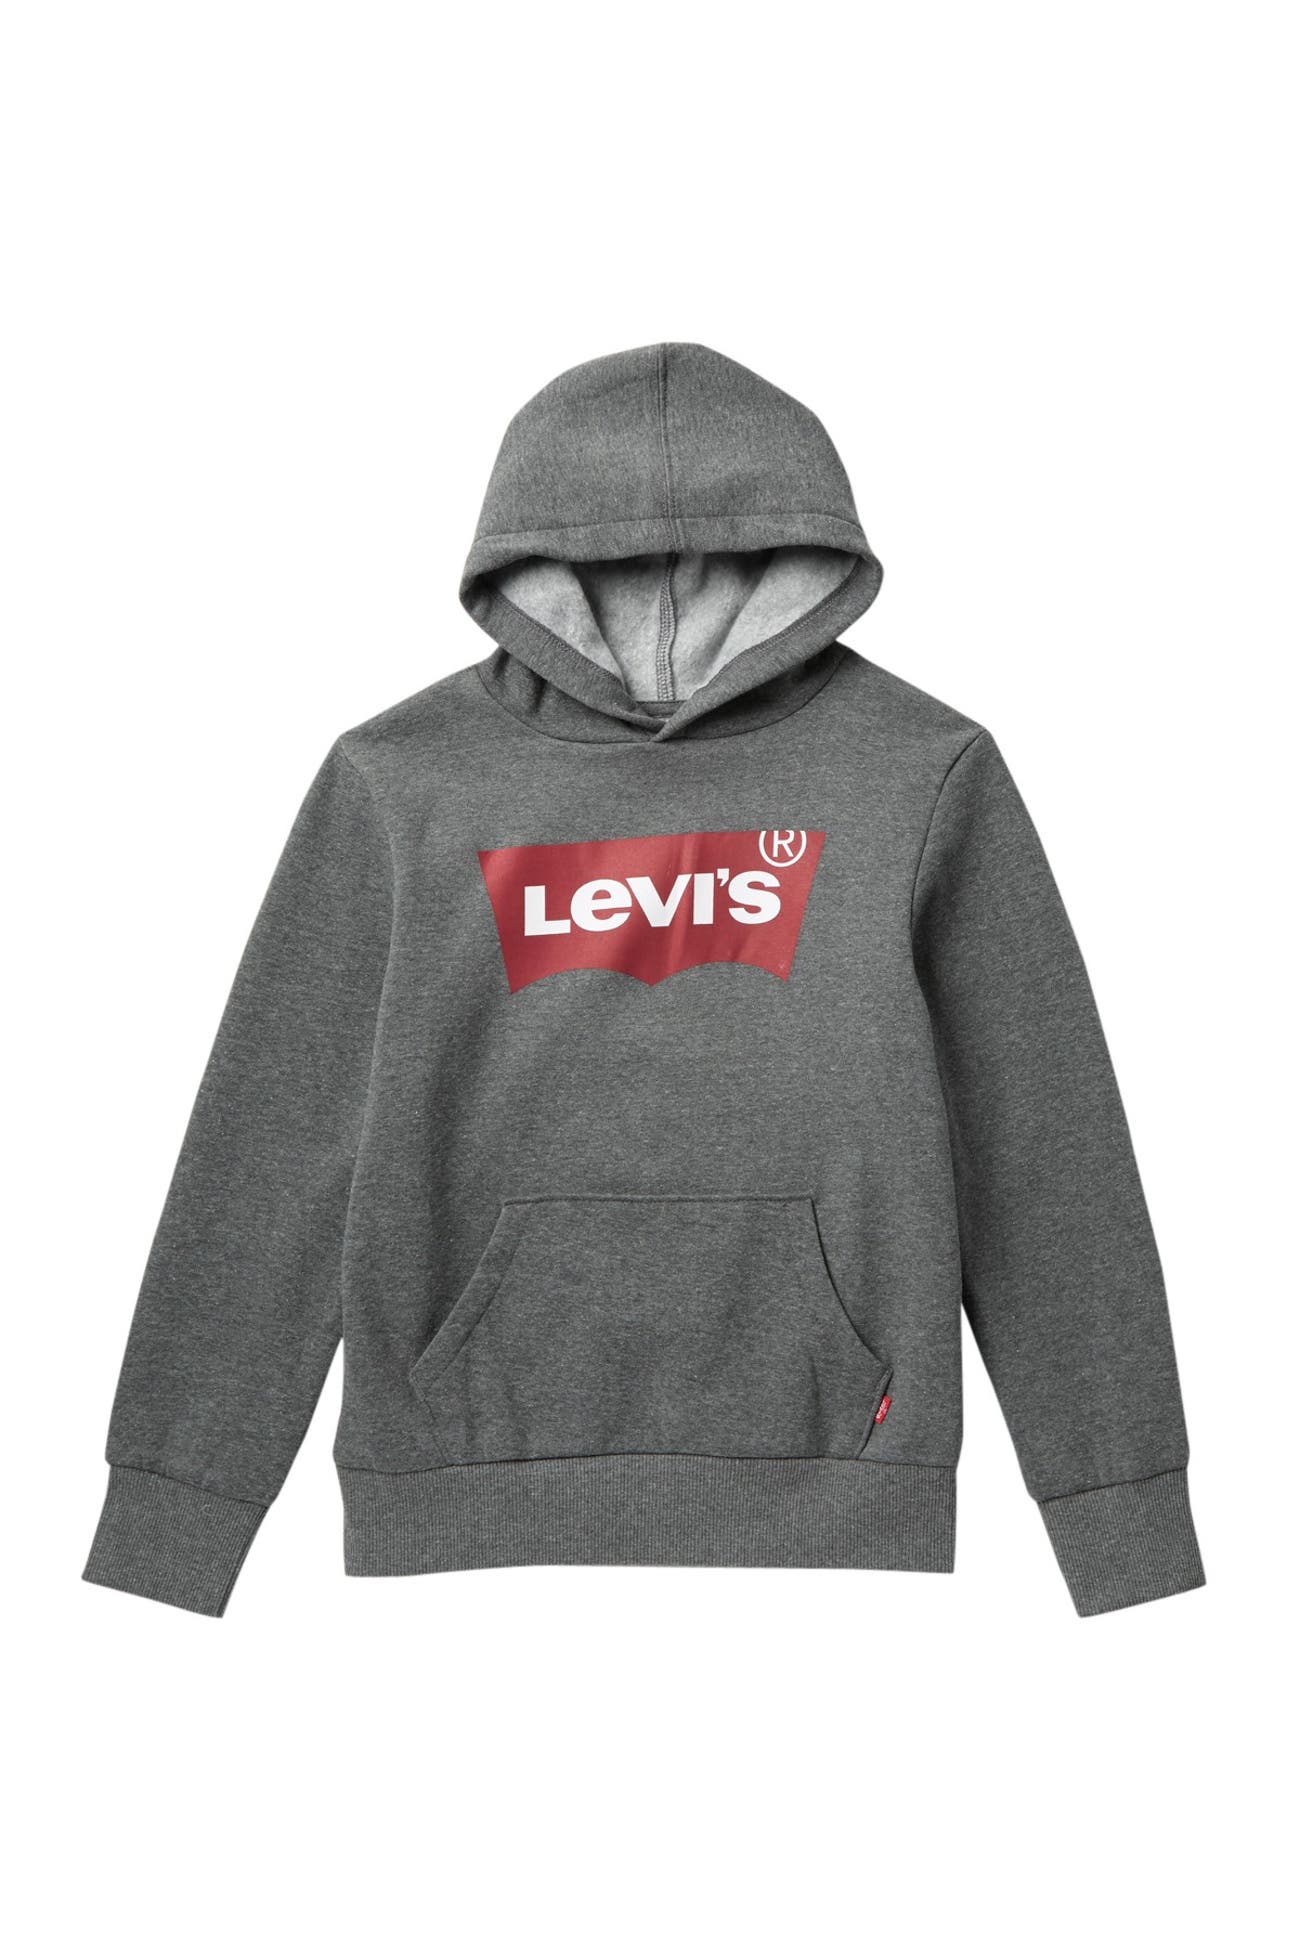 Levi's | Batwing Logo Hoodie | Nordstrom Rack